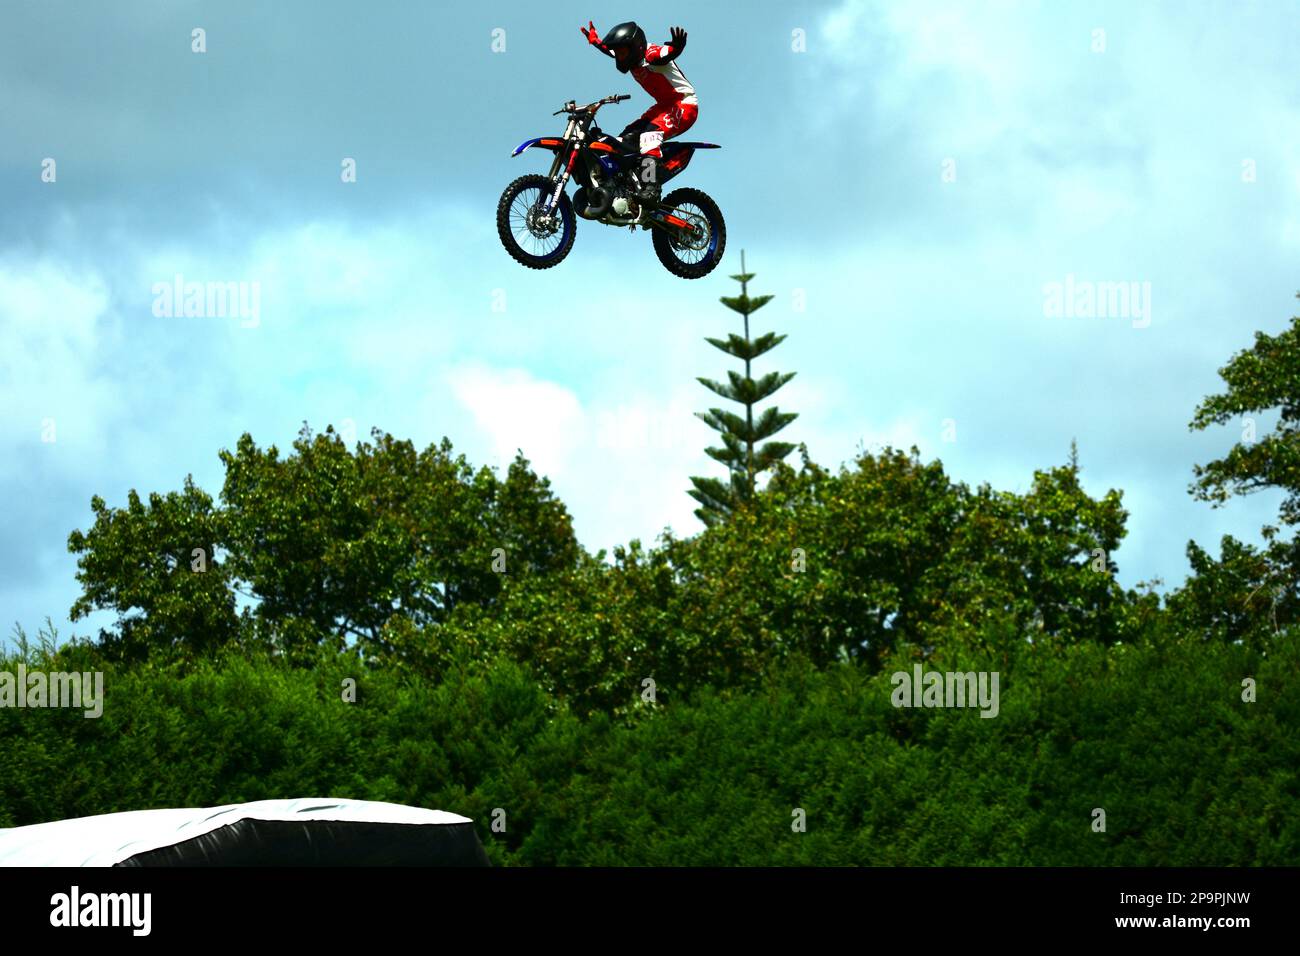 Auckland, Nouvelle-Zélande - mars 2023. Entraînement Dirtbike dans un parc. Un motard volant effectuant un saut dangereux. Banque D'Images